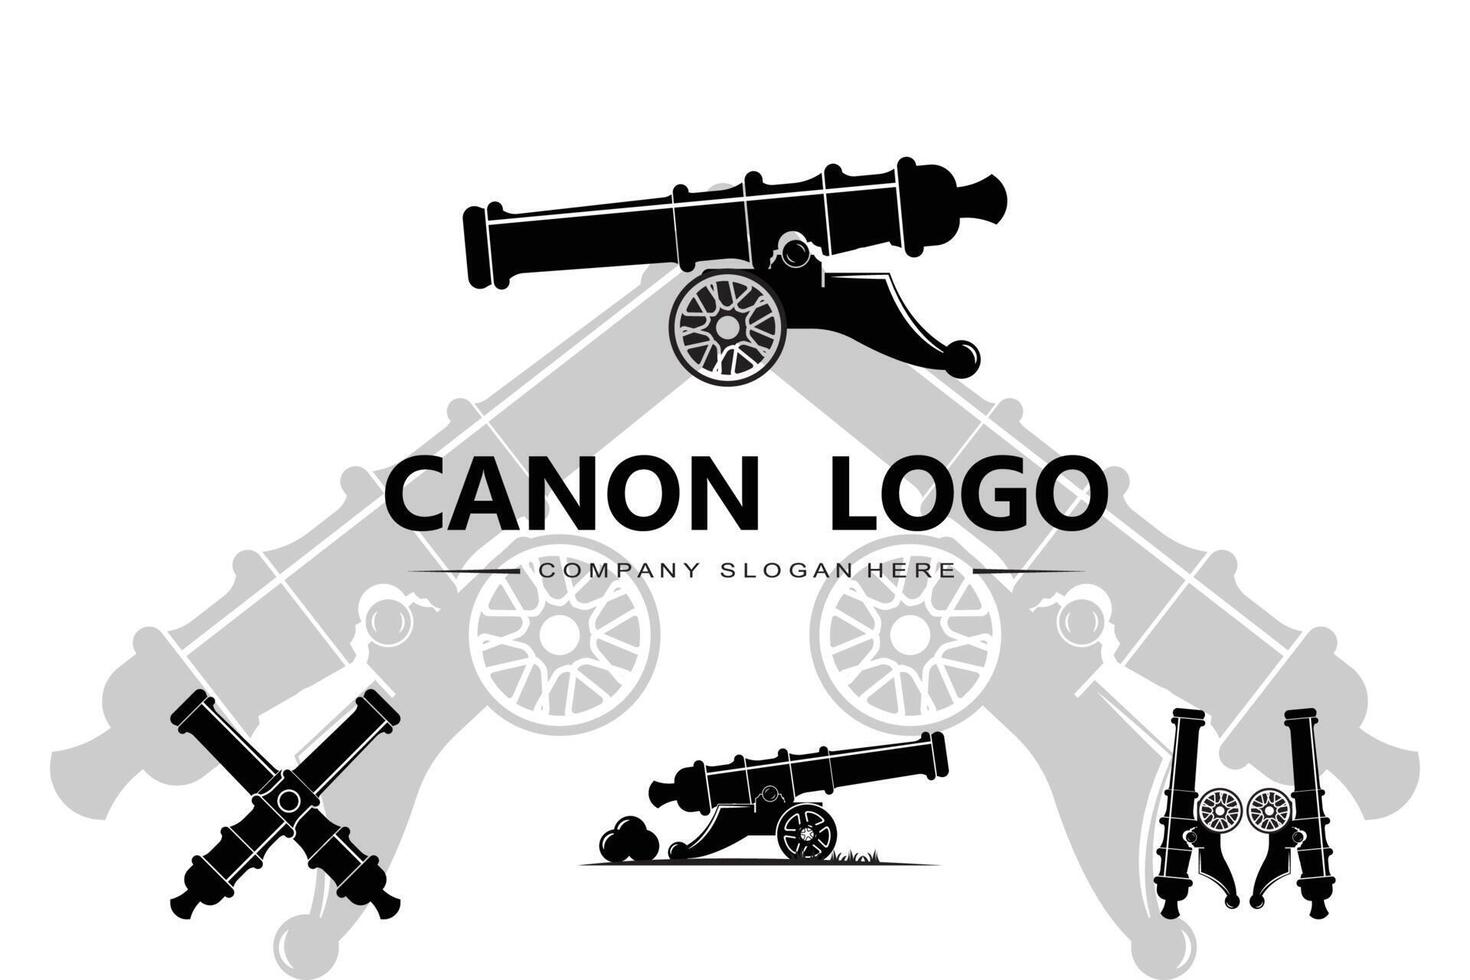 icona vettore logo cannone, arma da guerra dell'esercito, bomba, ordigno esplosivo, guardia reale, vintage retrò